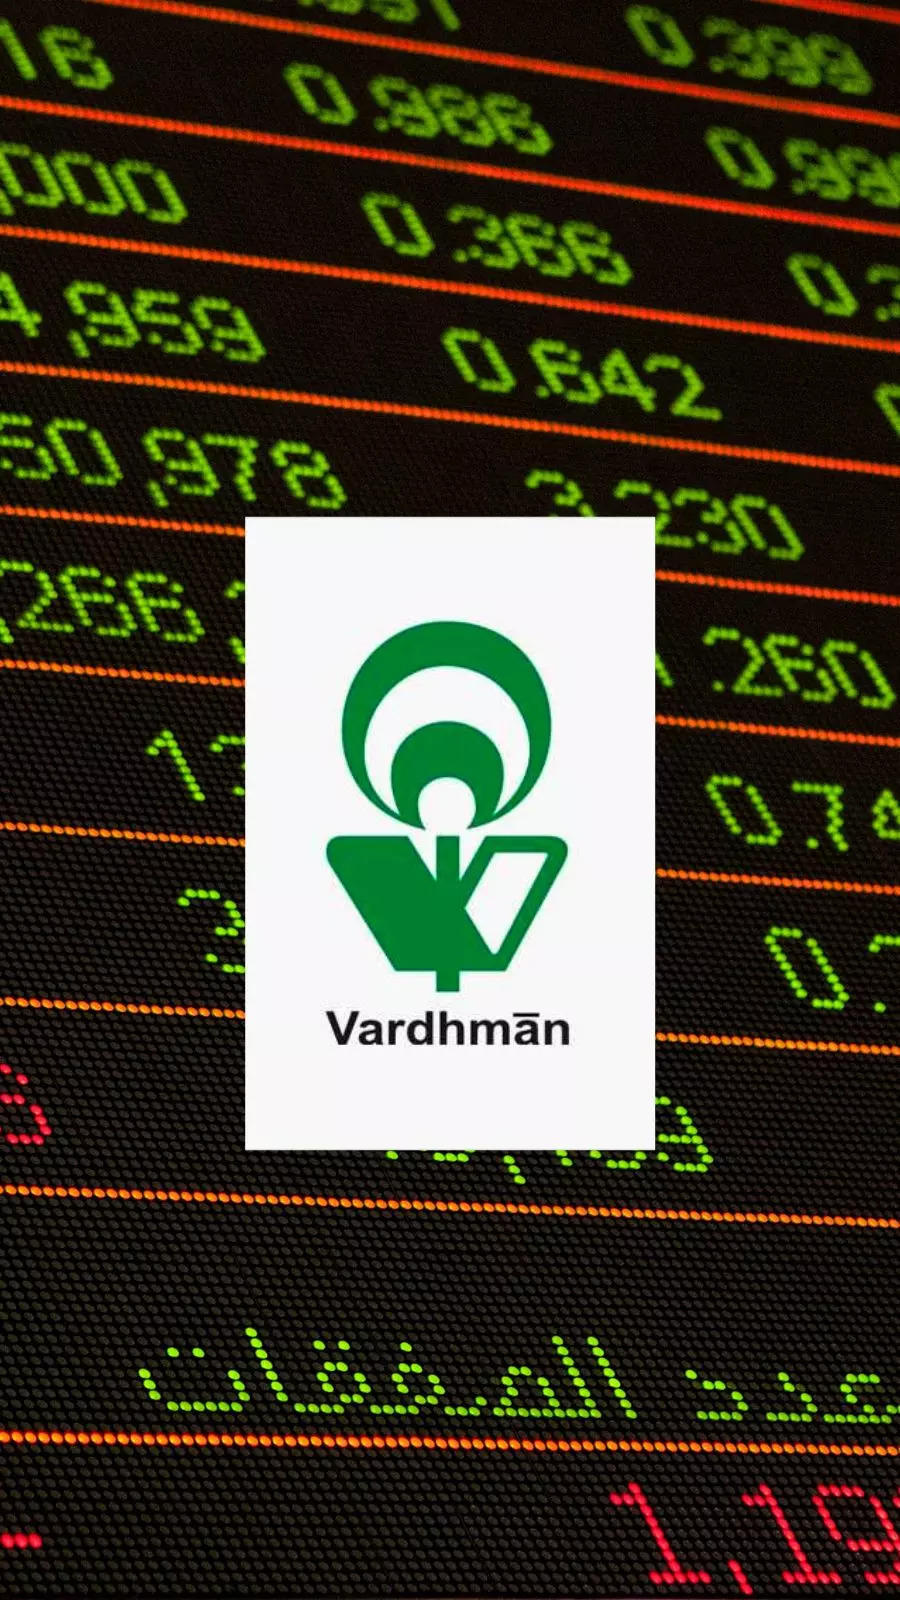 Vardhman Textiles Q1 PAT up at Rs 78.7 crore - The Economic Times Video |  ET Now